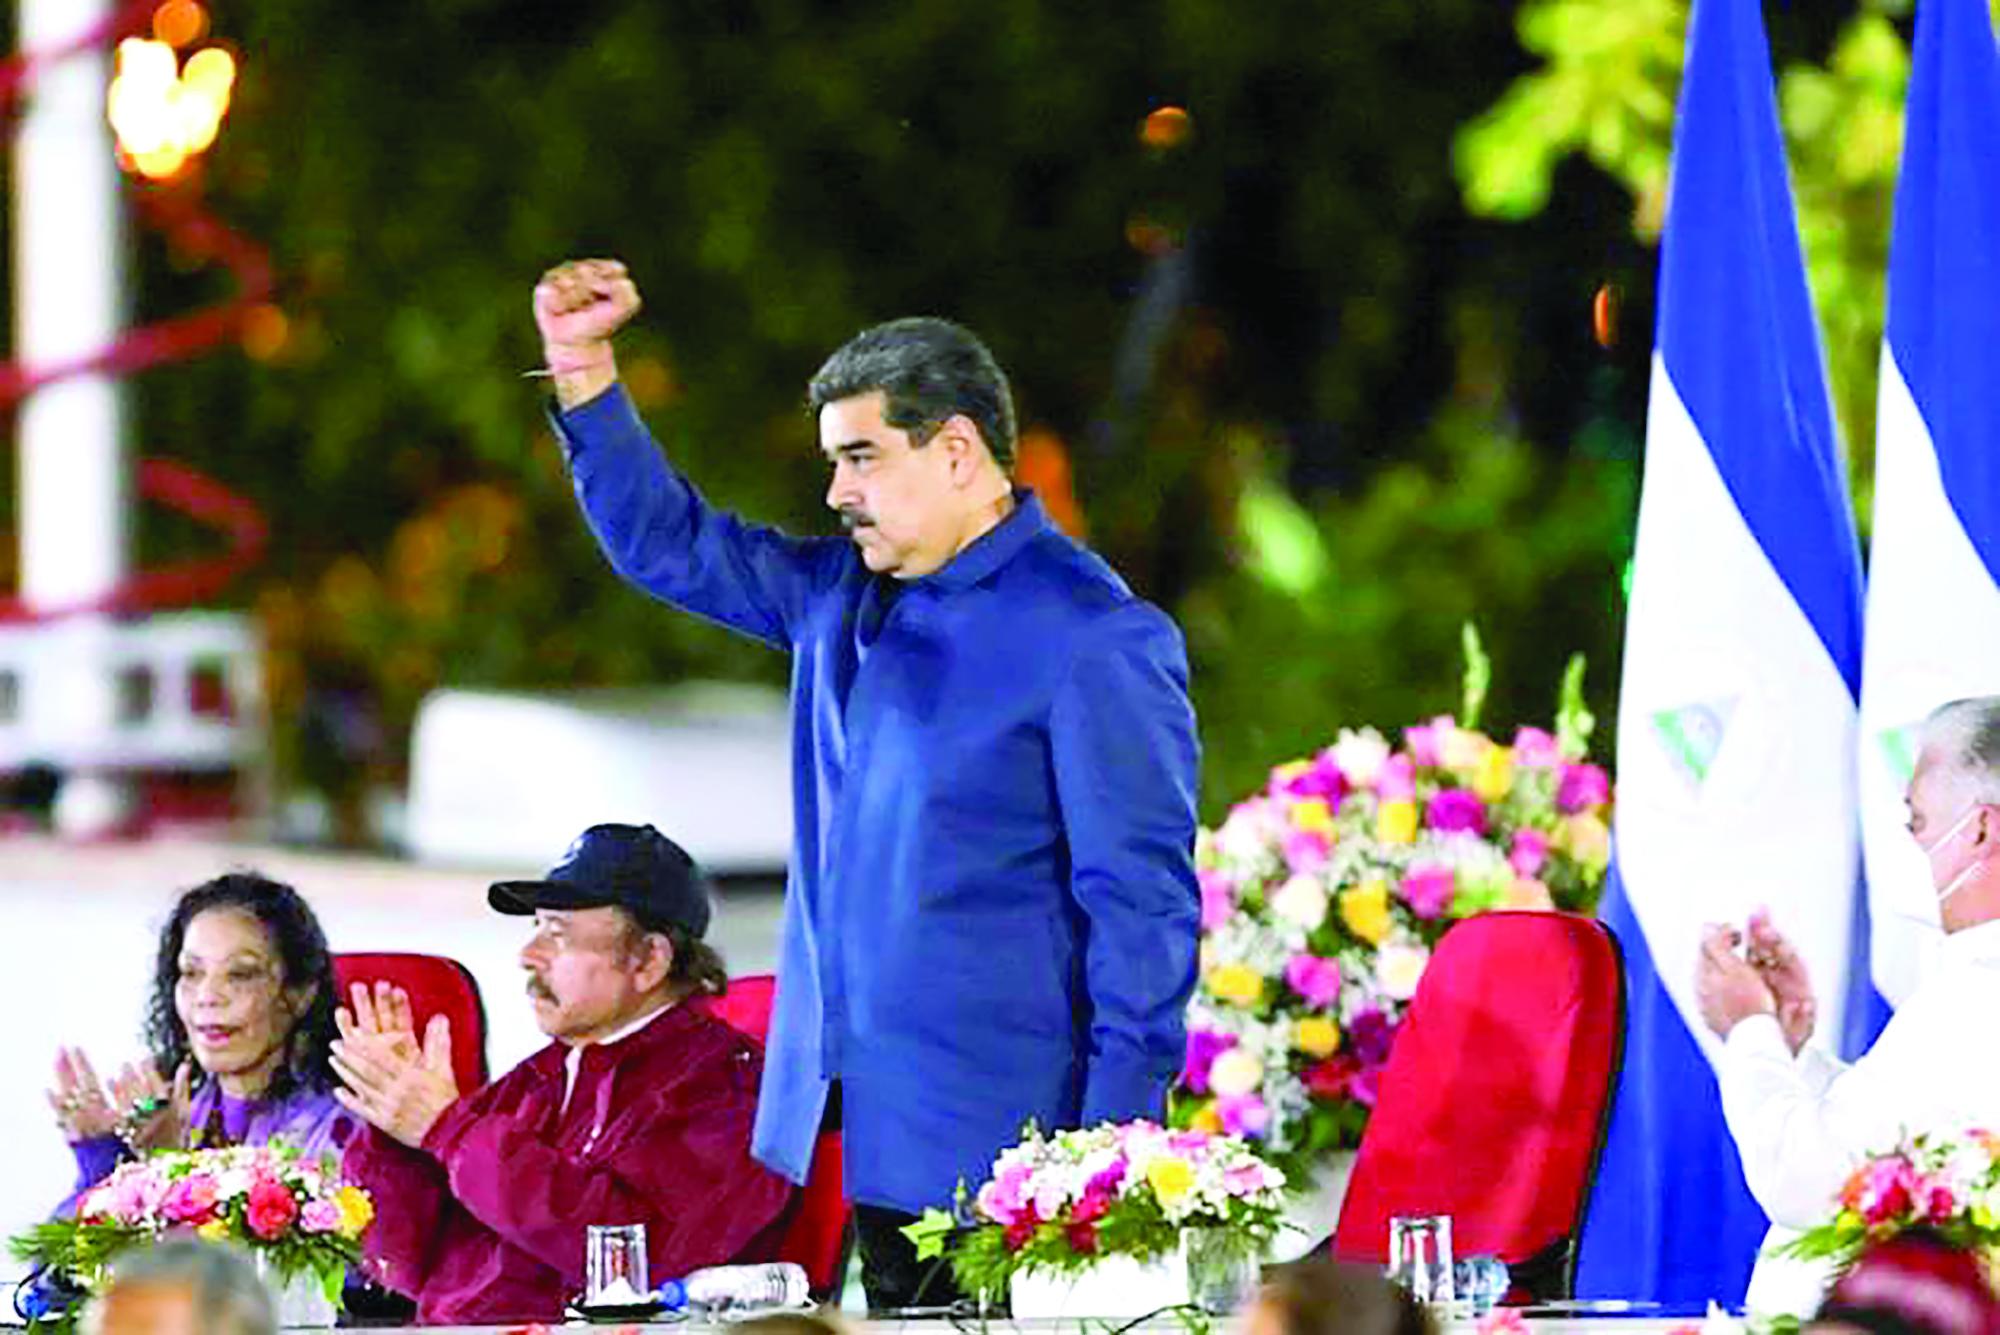 De esta manera, antes de comenzar su gobierno, se desmarca de los líderes autoritarios de izquierda de América Latina, como Nicolás Maduro de Venezuela y Daniel Ortega de Nicaragua.